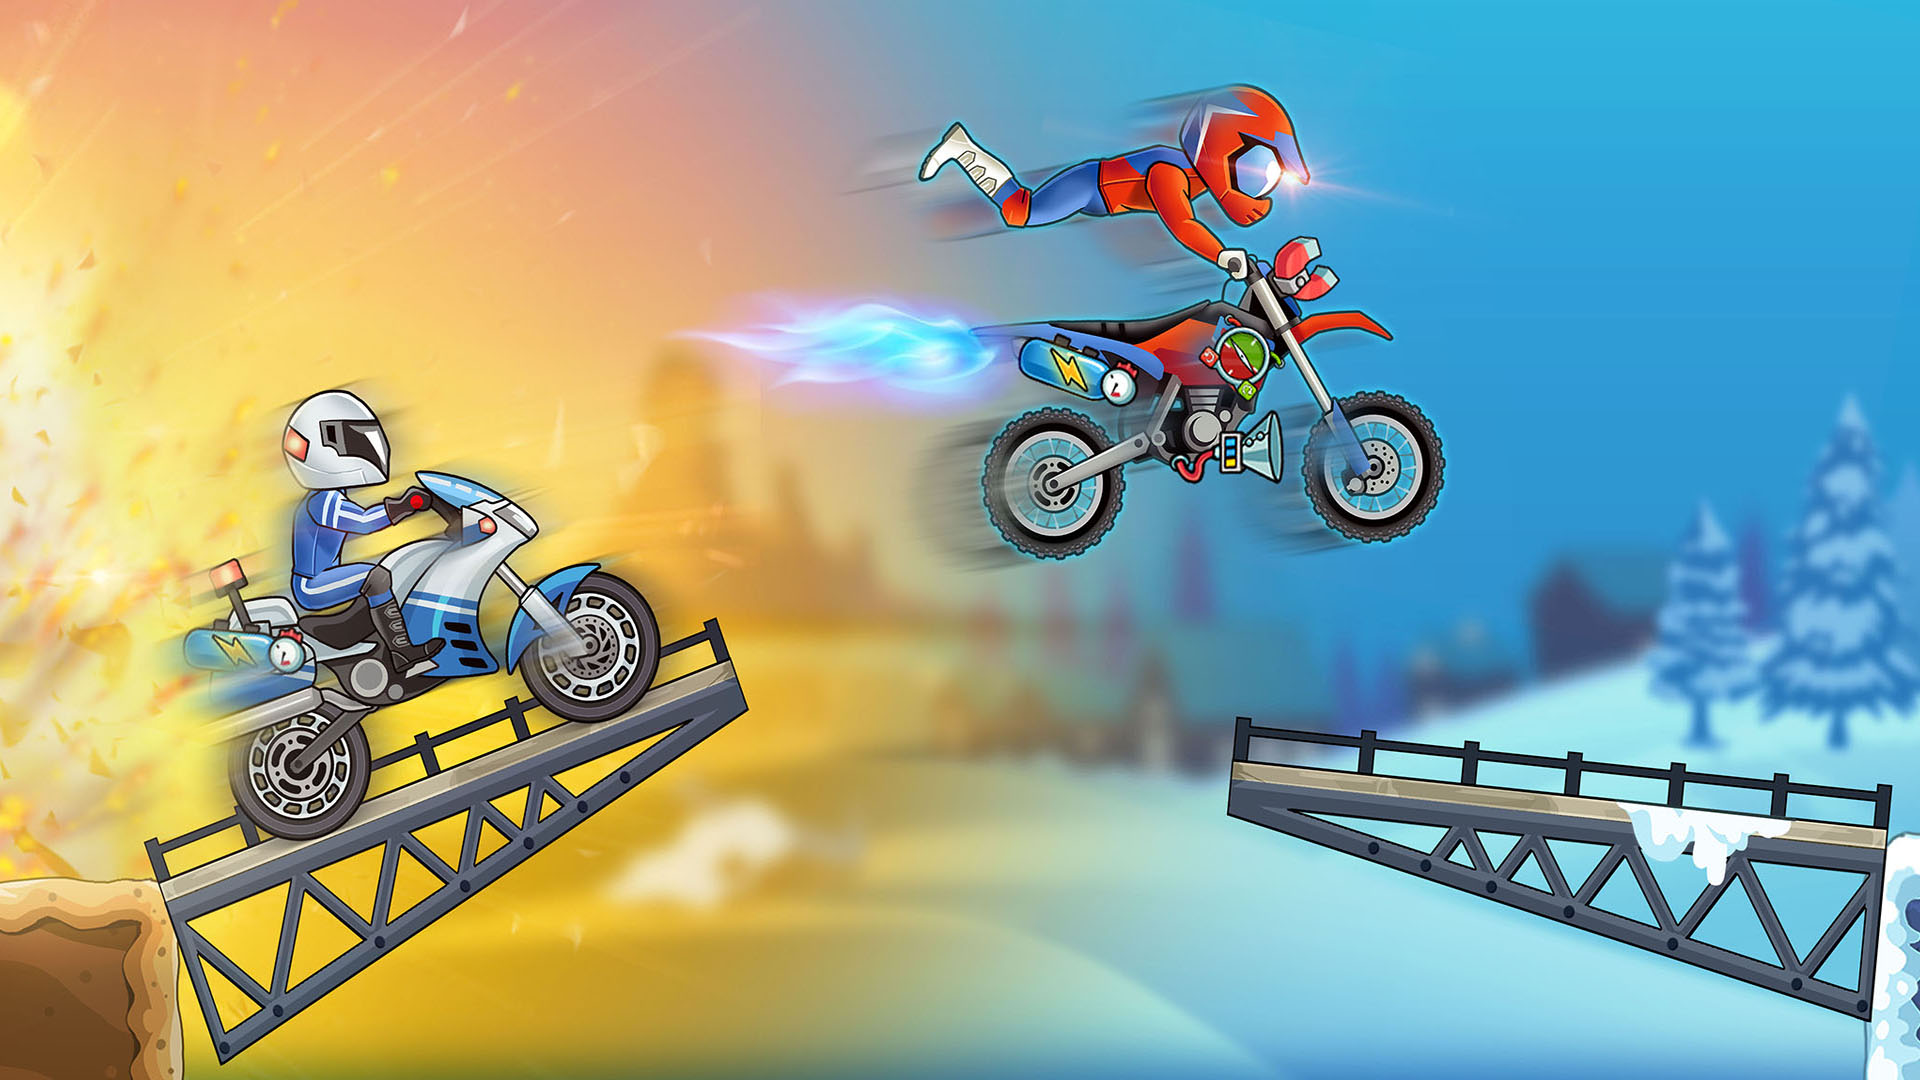 Descargar Turbo Bike: Extreme Racing gratis para Android.